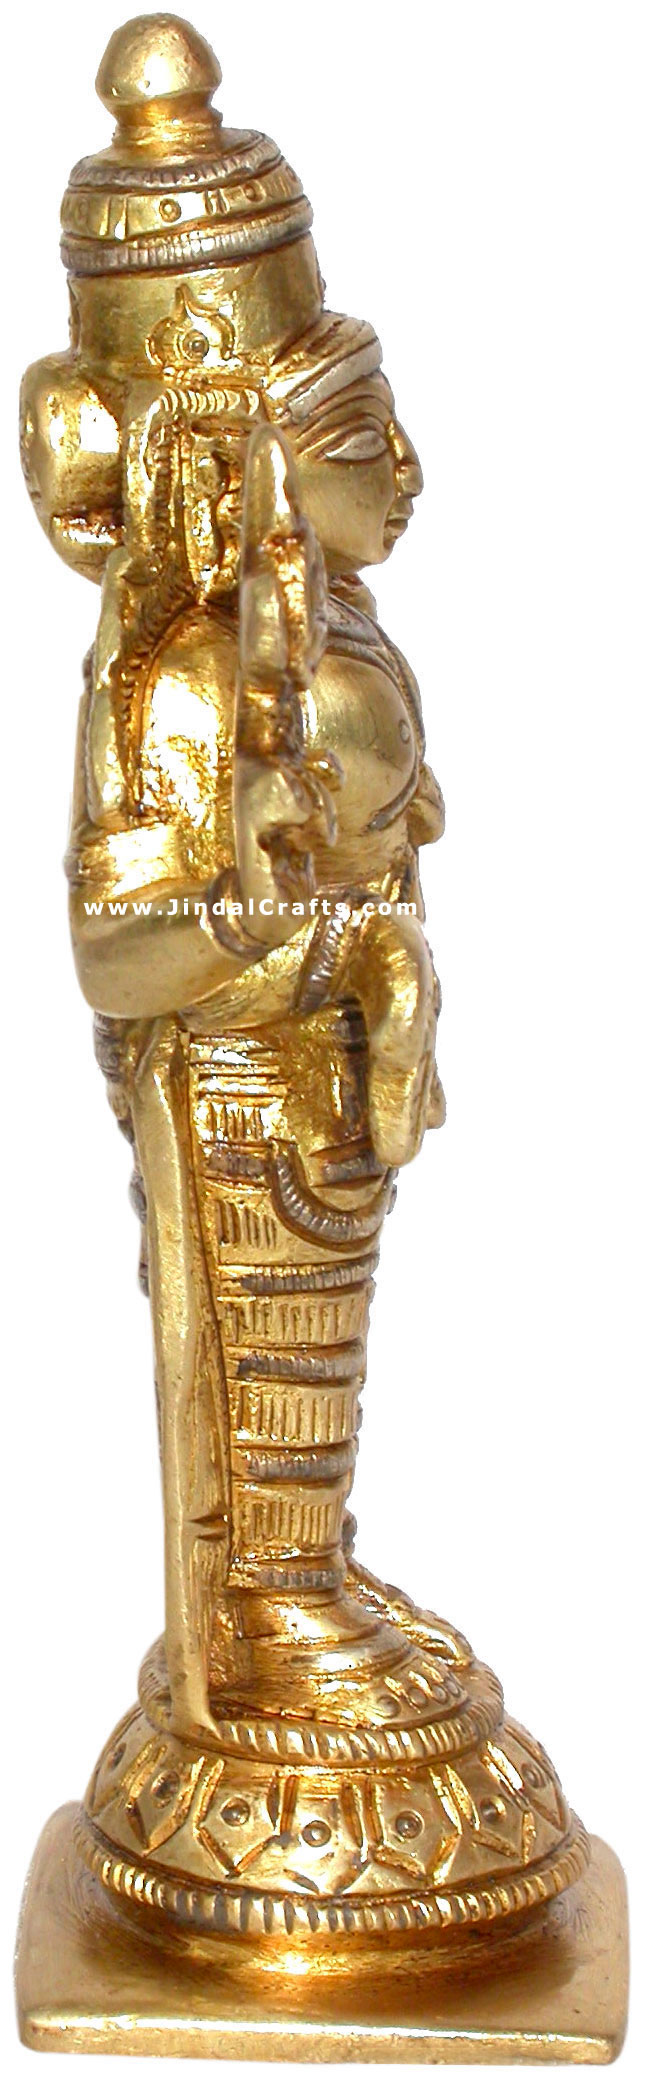 Vishnu Indian Gods Statues Religious Perumal Figures